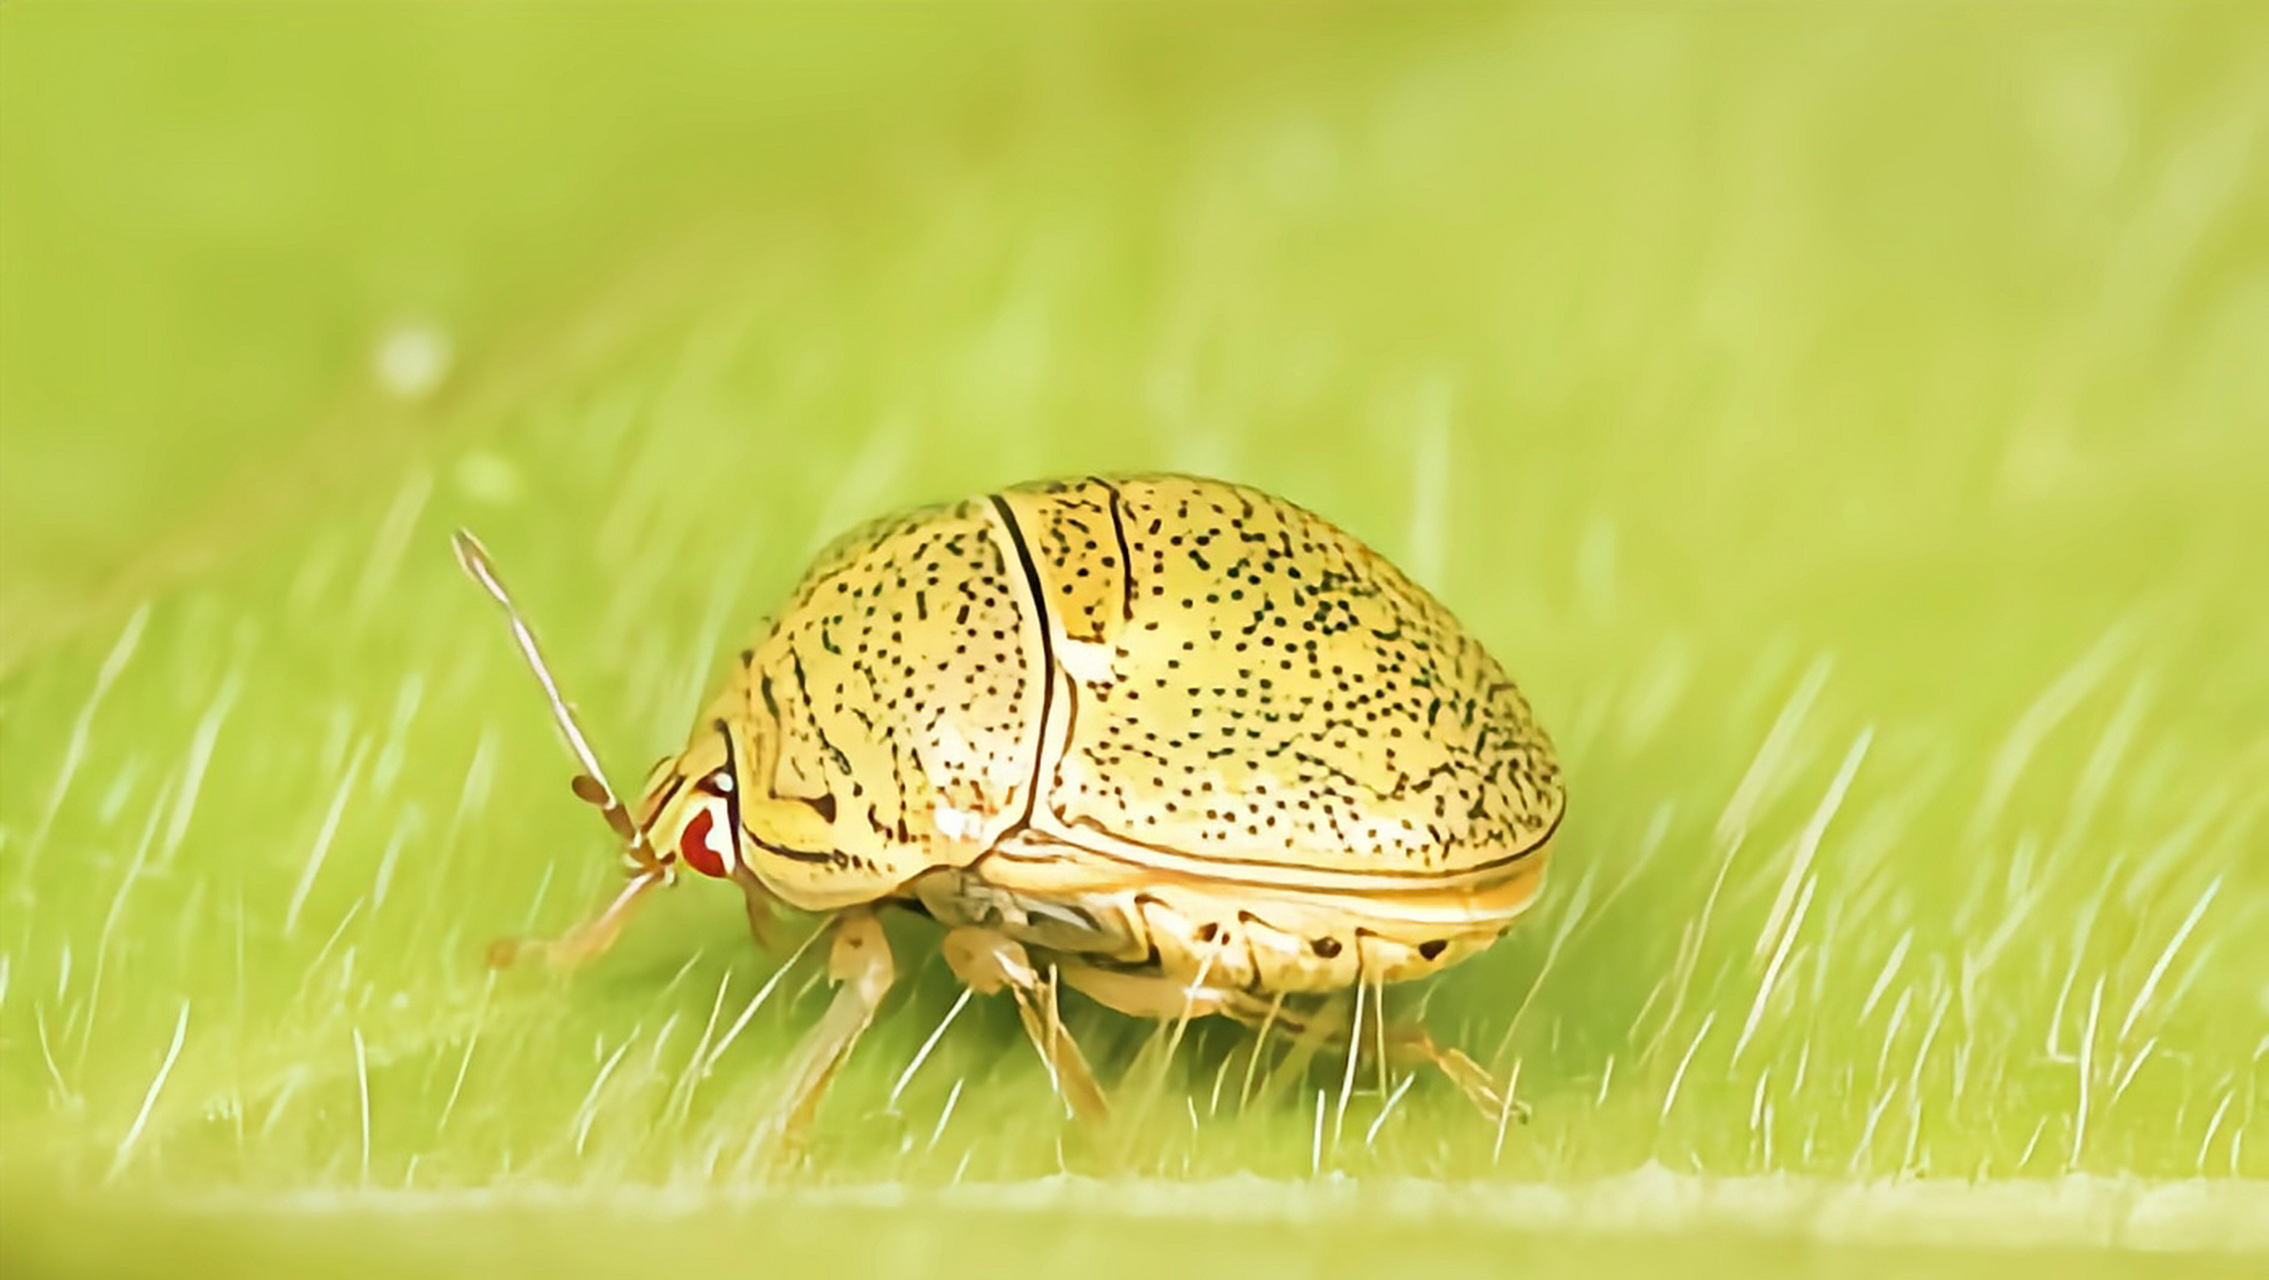 豆龟蝽与圆龟蝽属相似,体卵圆形,背面隆起,小盾片发达,覆盖整个腹部